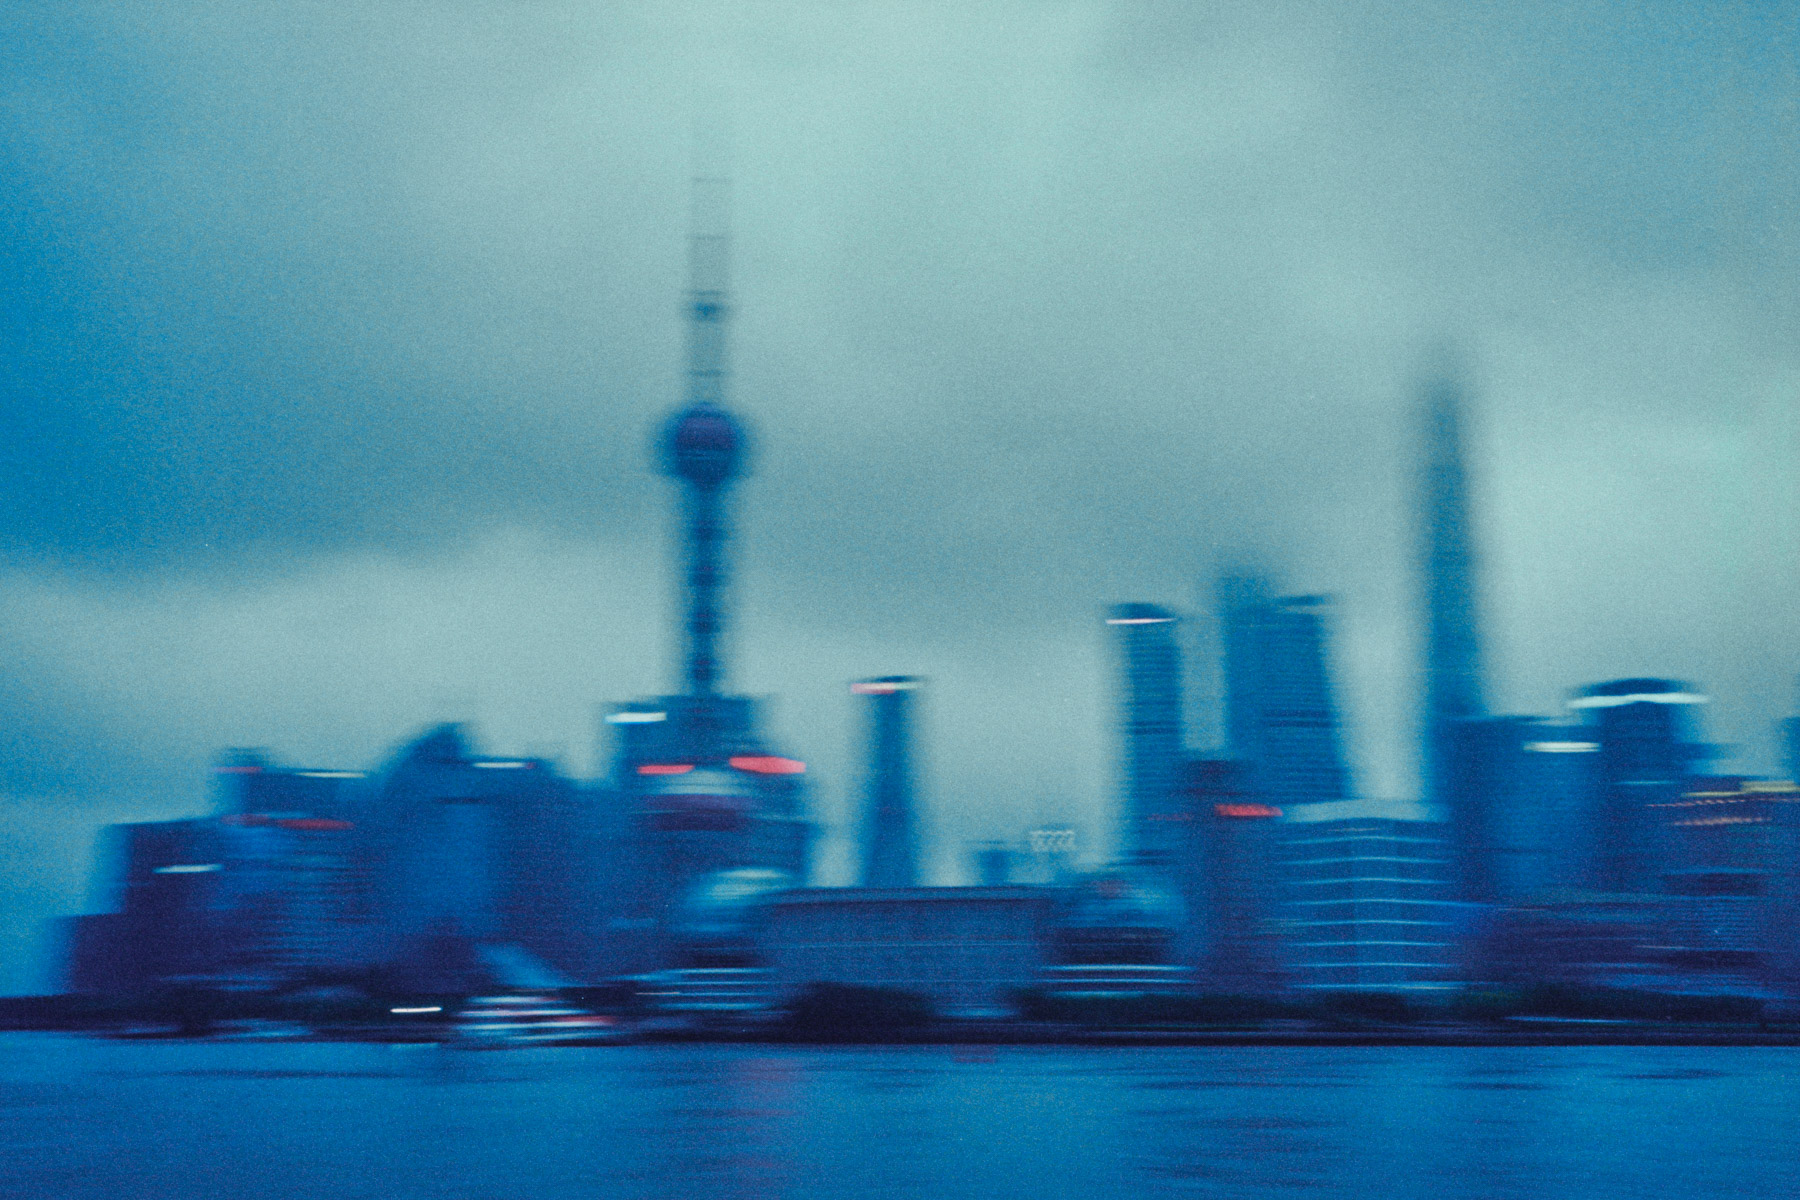 The Shanghai skyline at dusk.